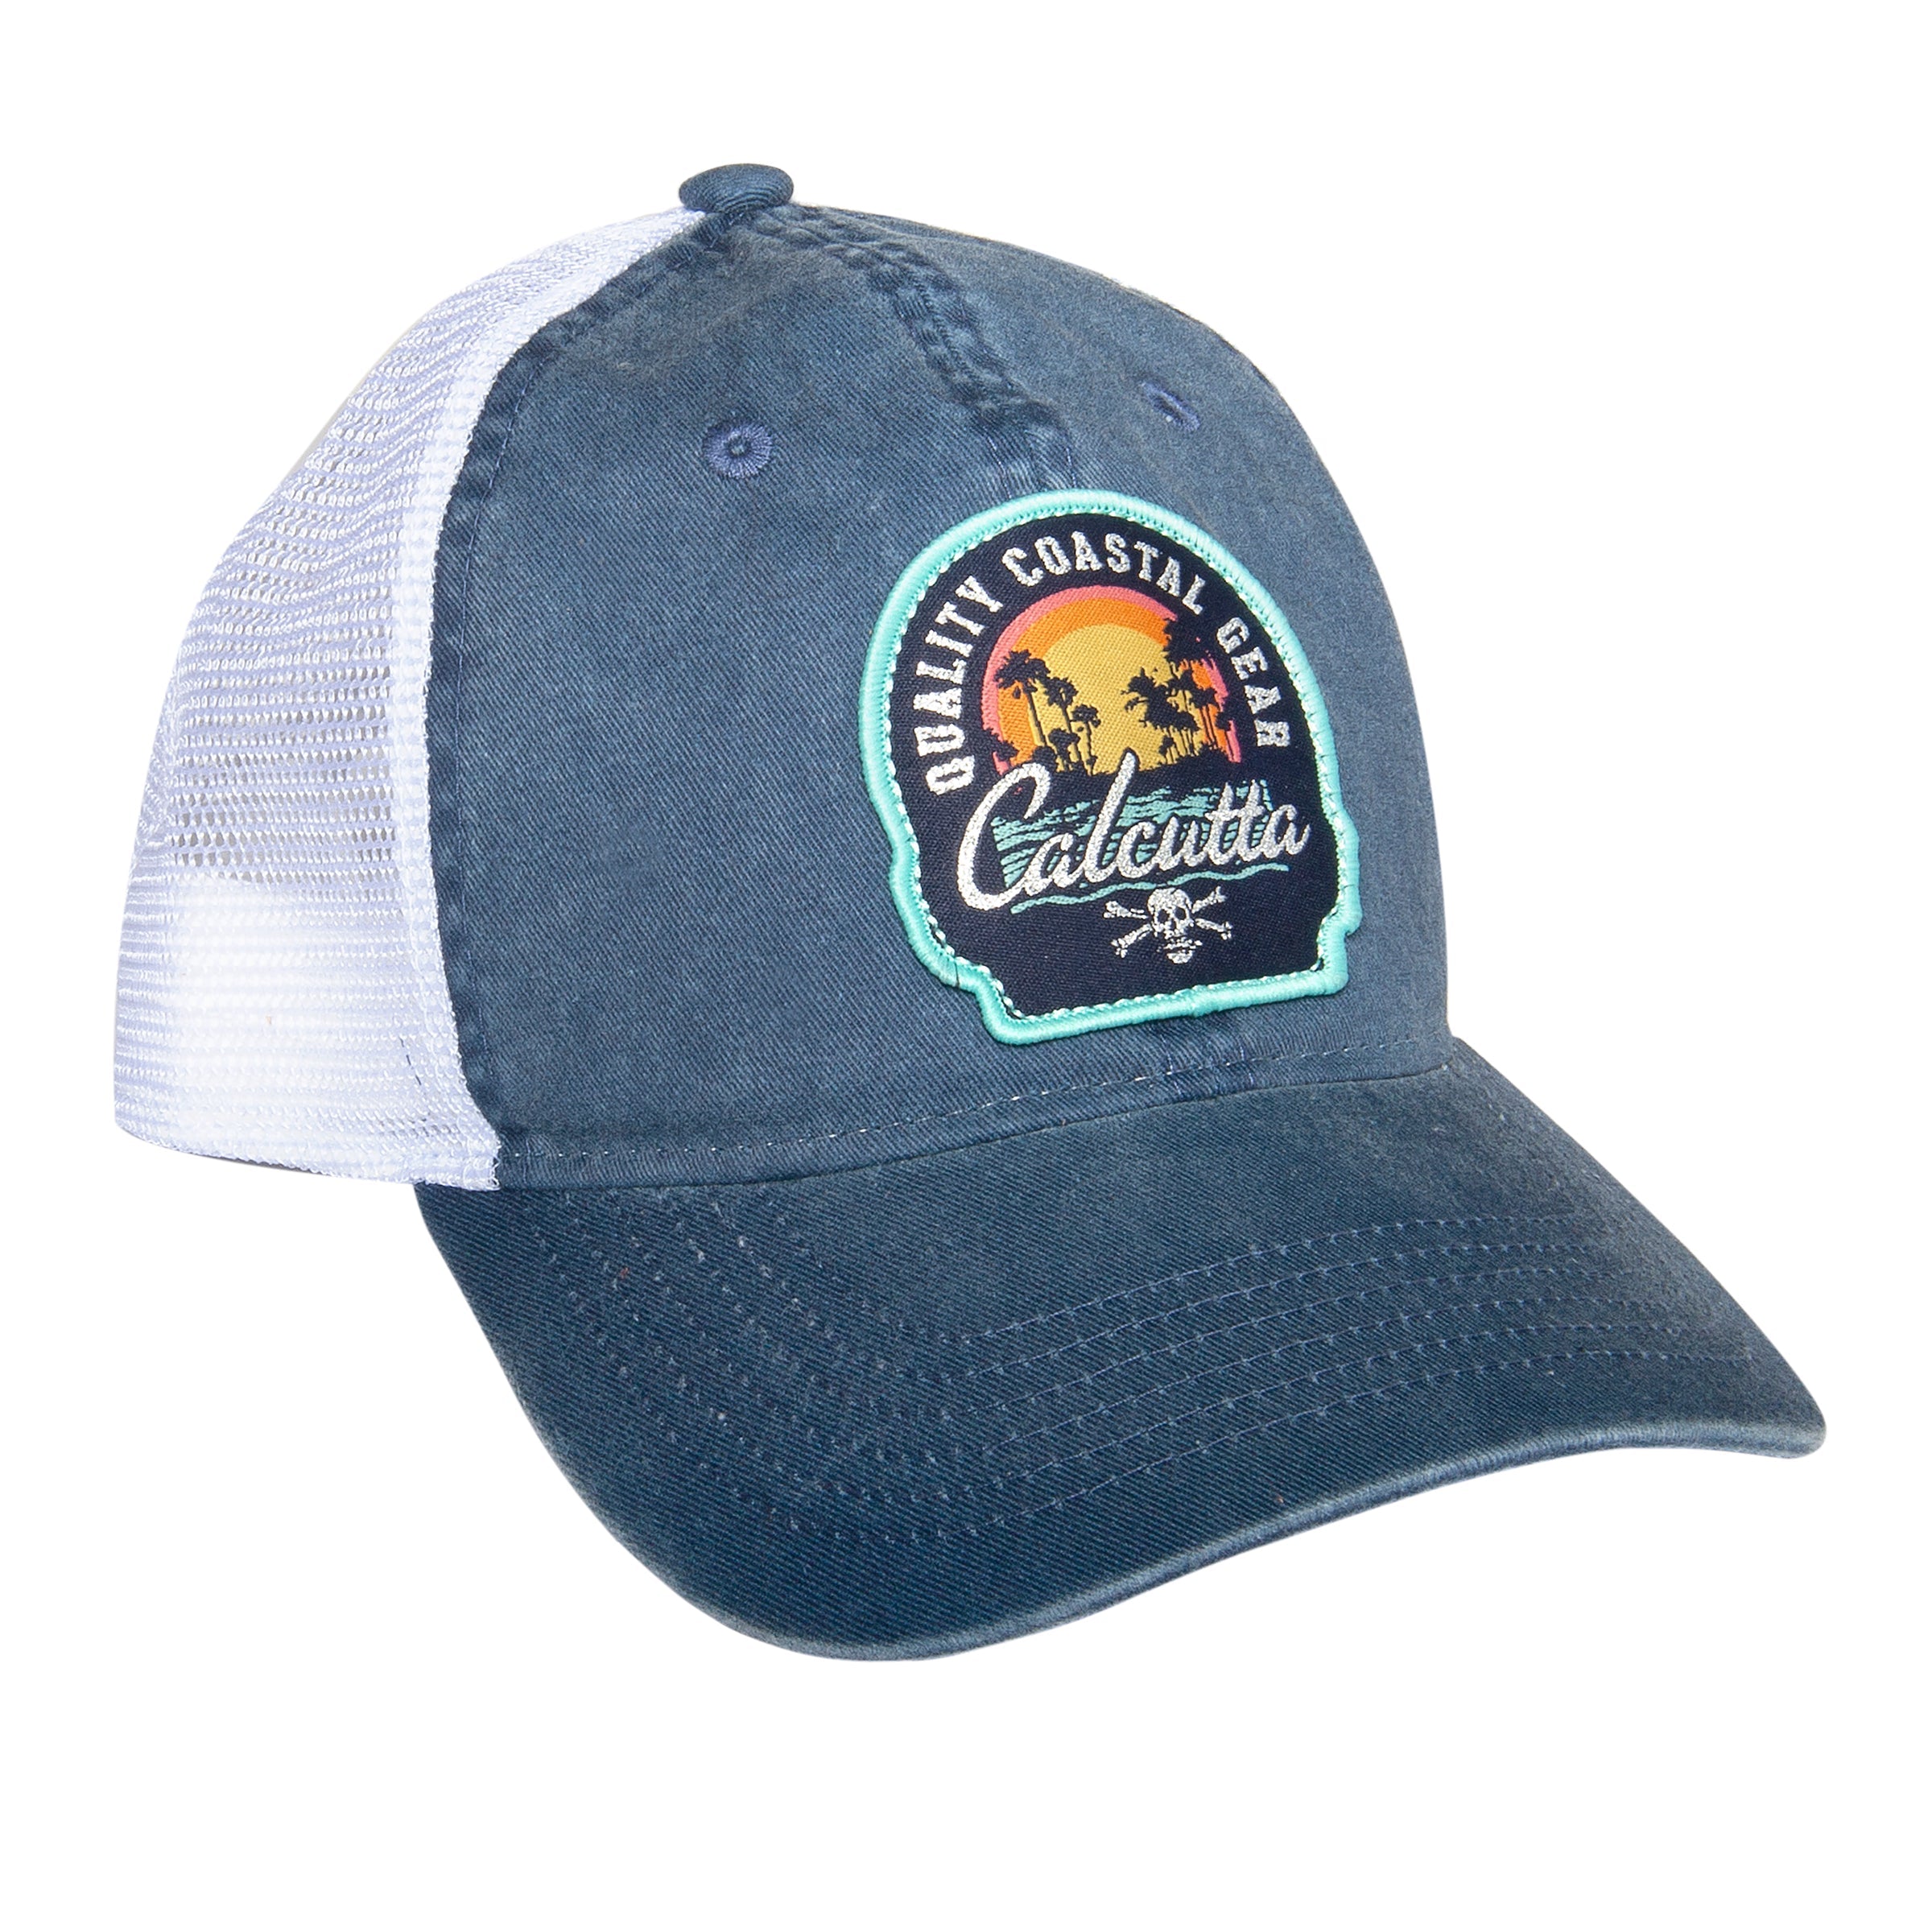 Calcutta Quality Coastal Gear Hat